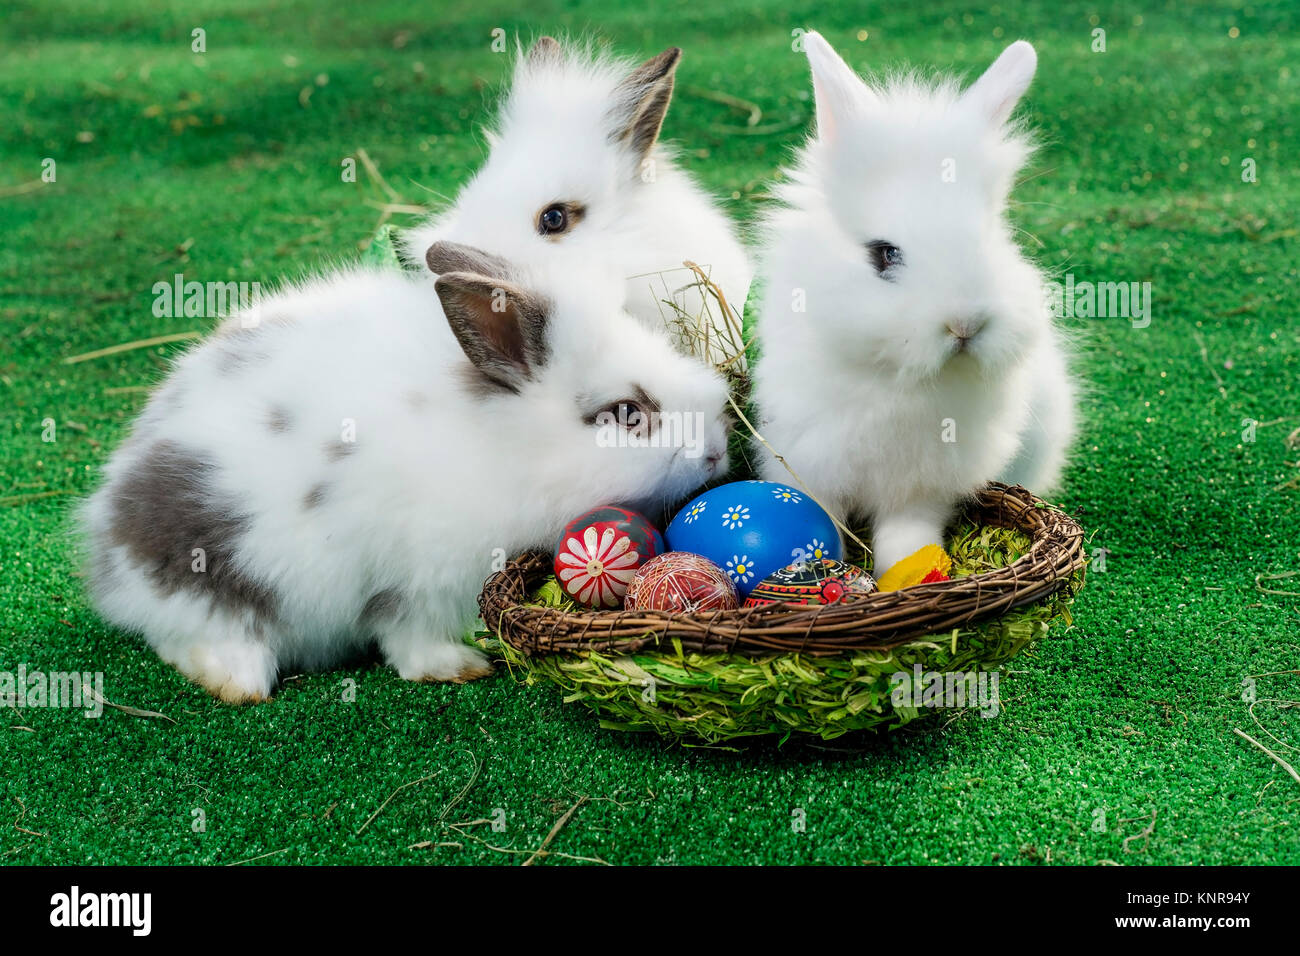 Osterhasen im Osternest - easter rabbits in easter nest Stock Photo